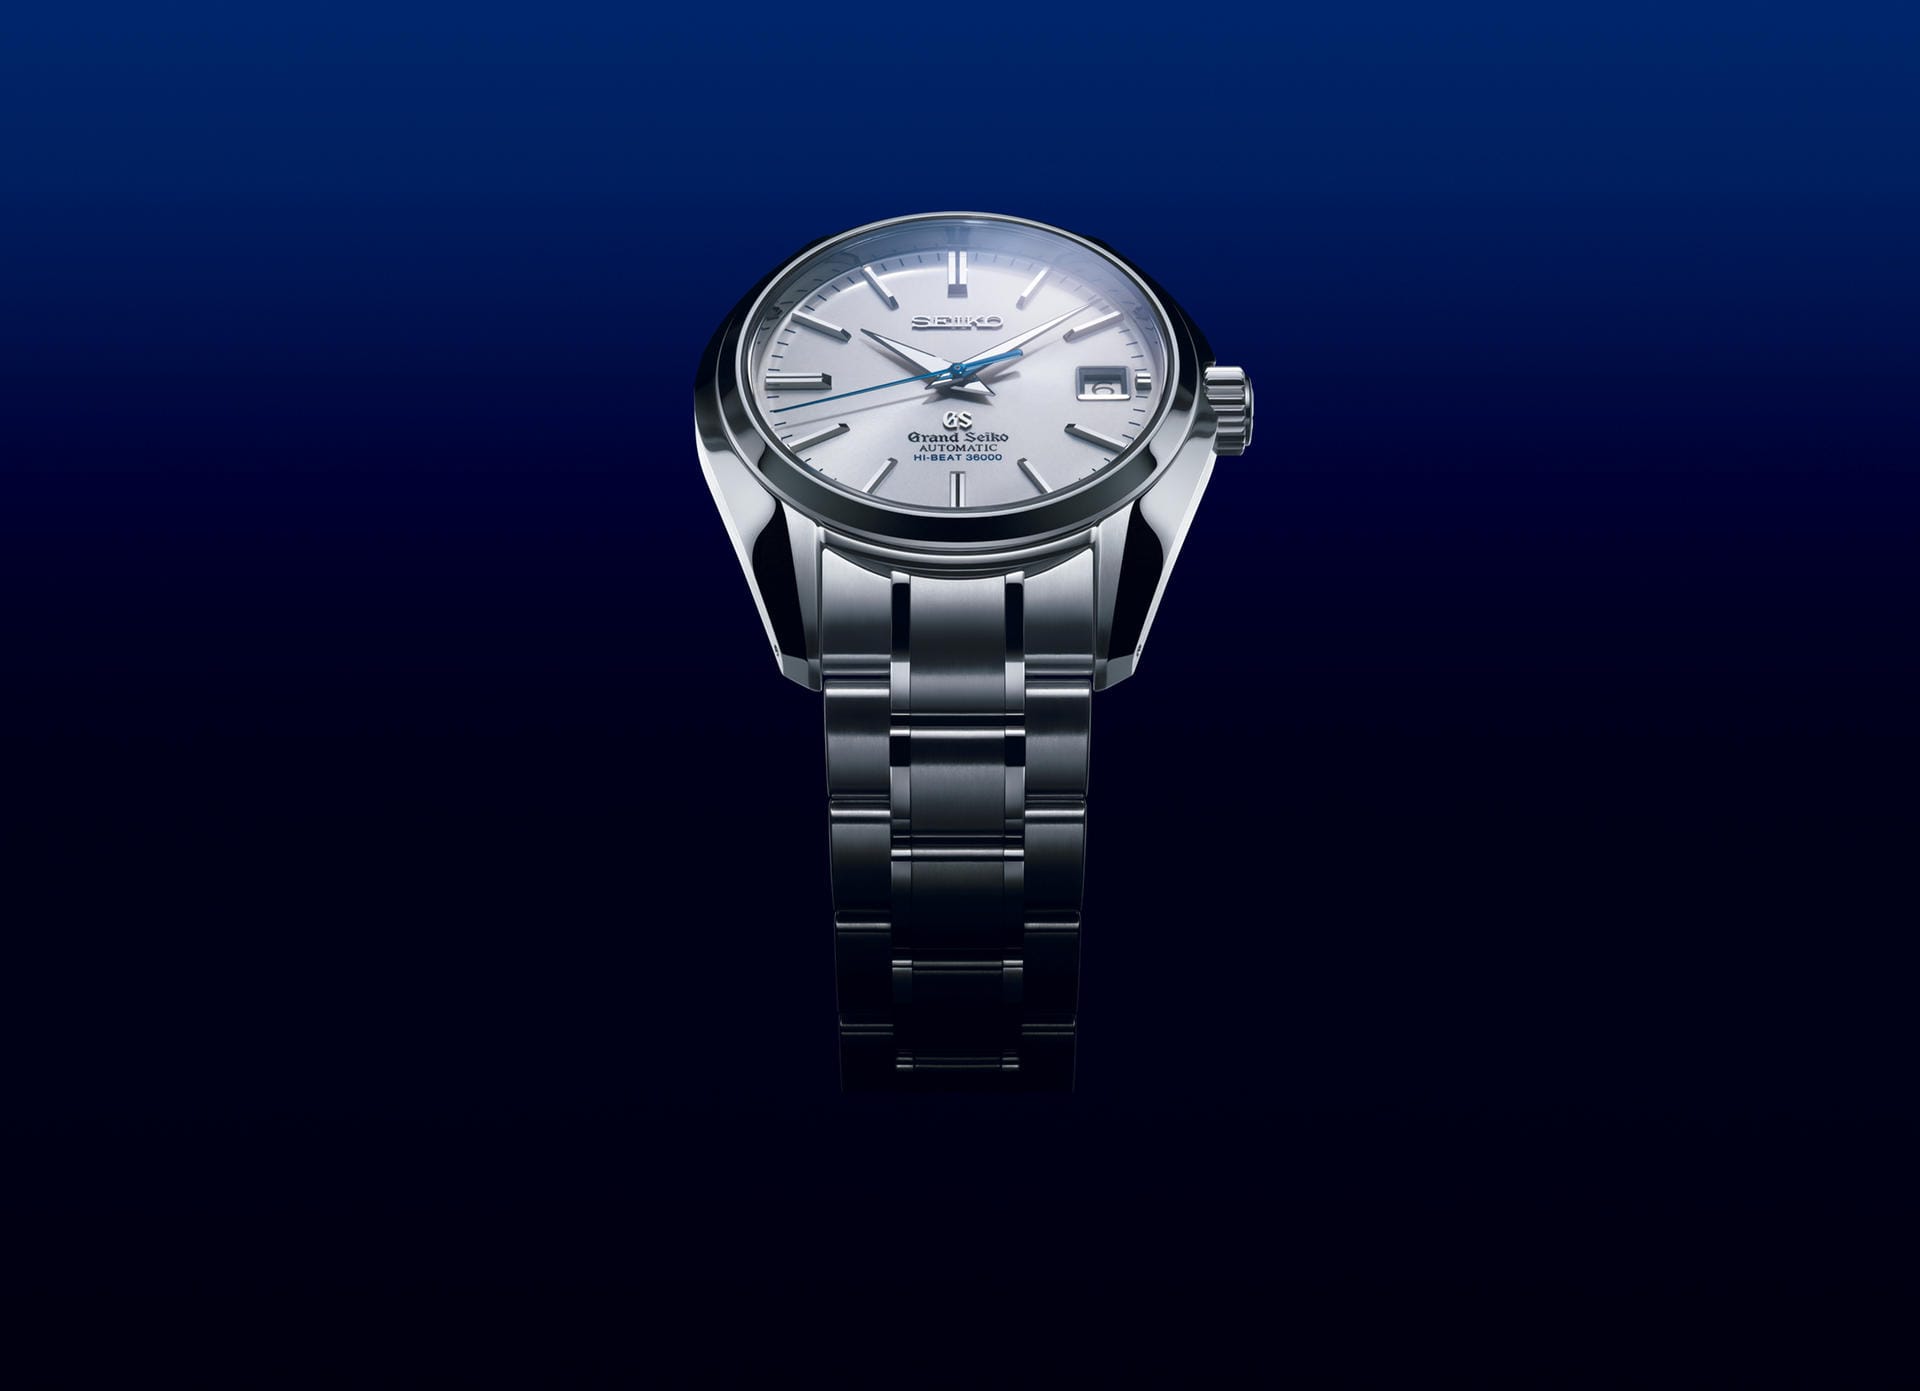 Einer der wenigen Uhrenbauer, die Schnellschwinger anbieten, ist der japanische Hersteller Seiko mit seiner Luxus-Tochter Grand Seiko.